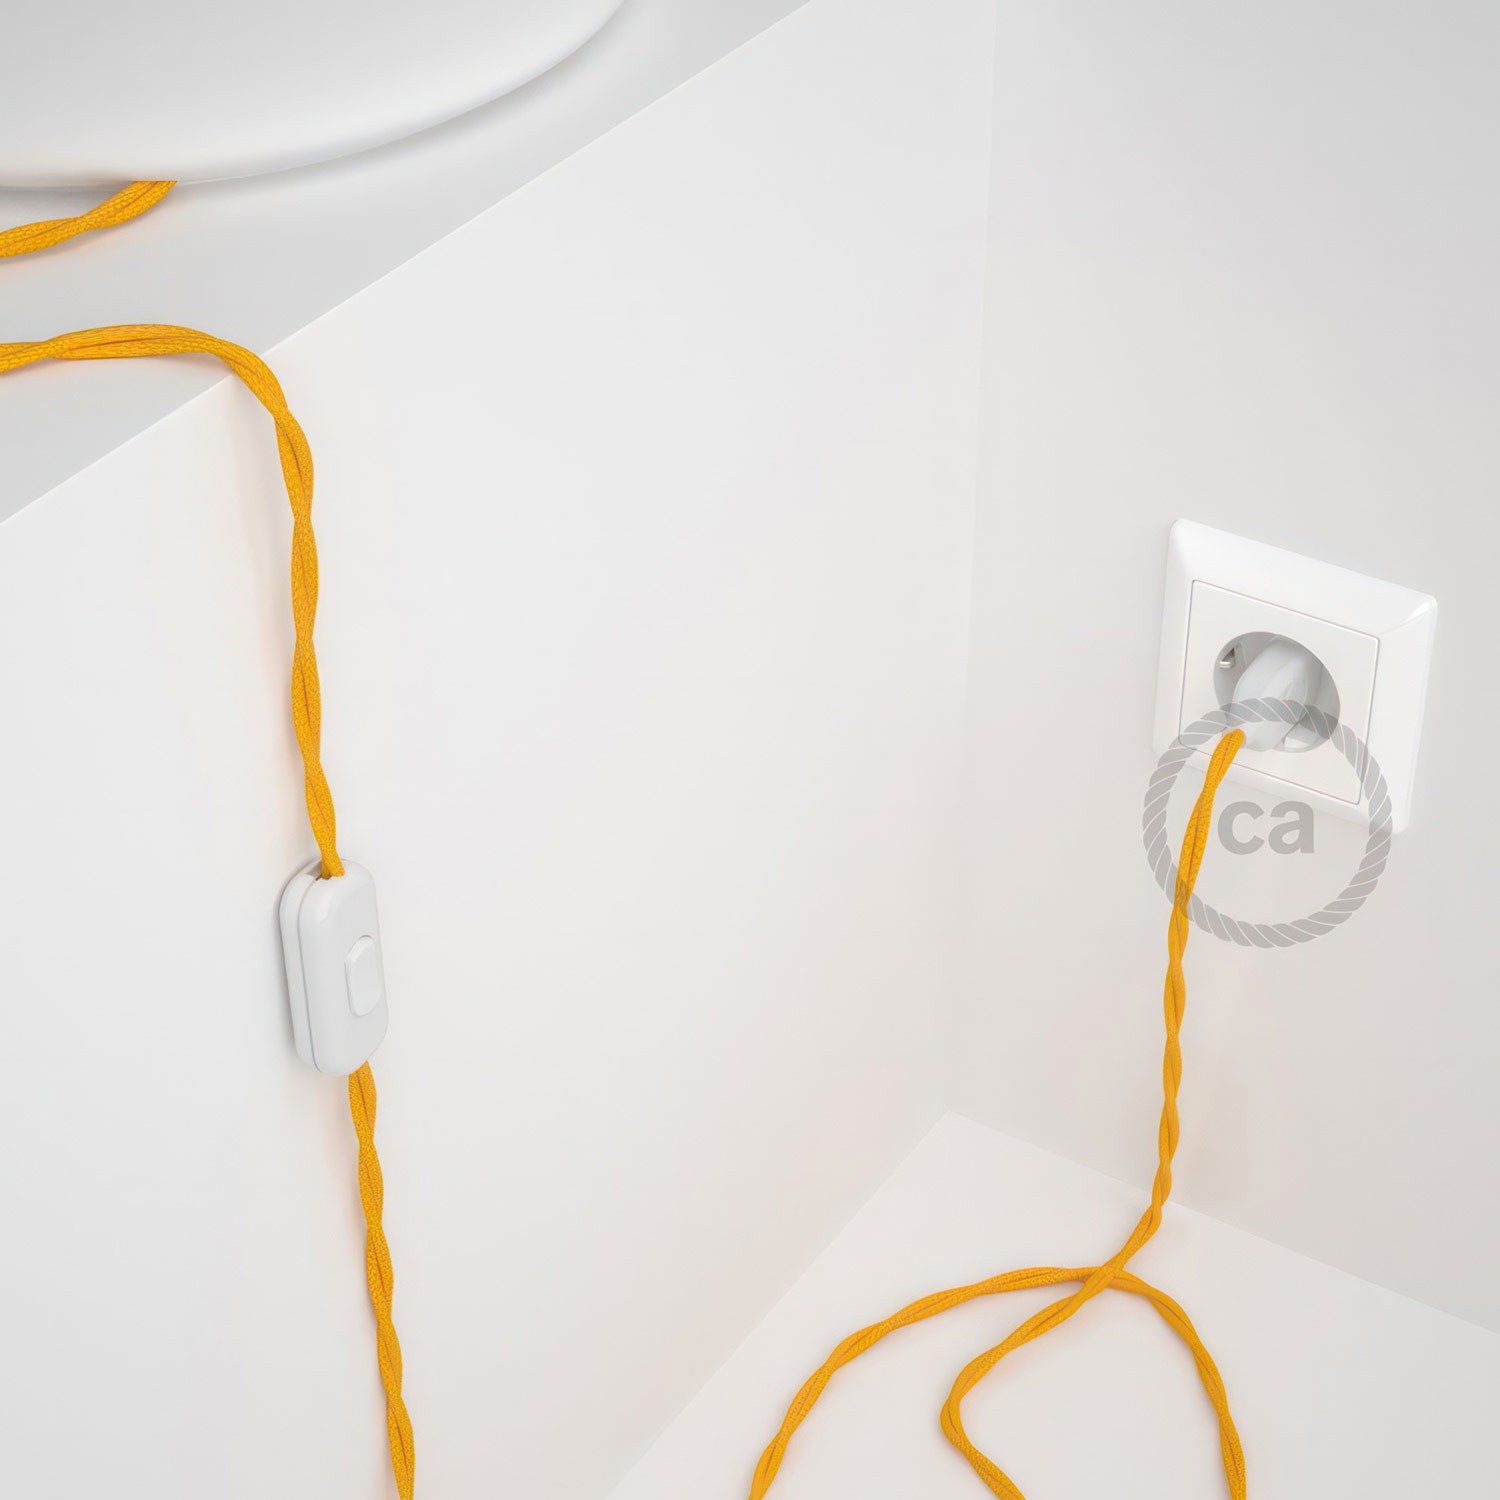 Cableado para lámpara, cable TM10 Efecto Seda Amarillo 1,8m. Elige tu el color de la clavija y del interruptor!